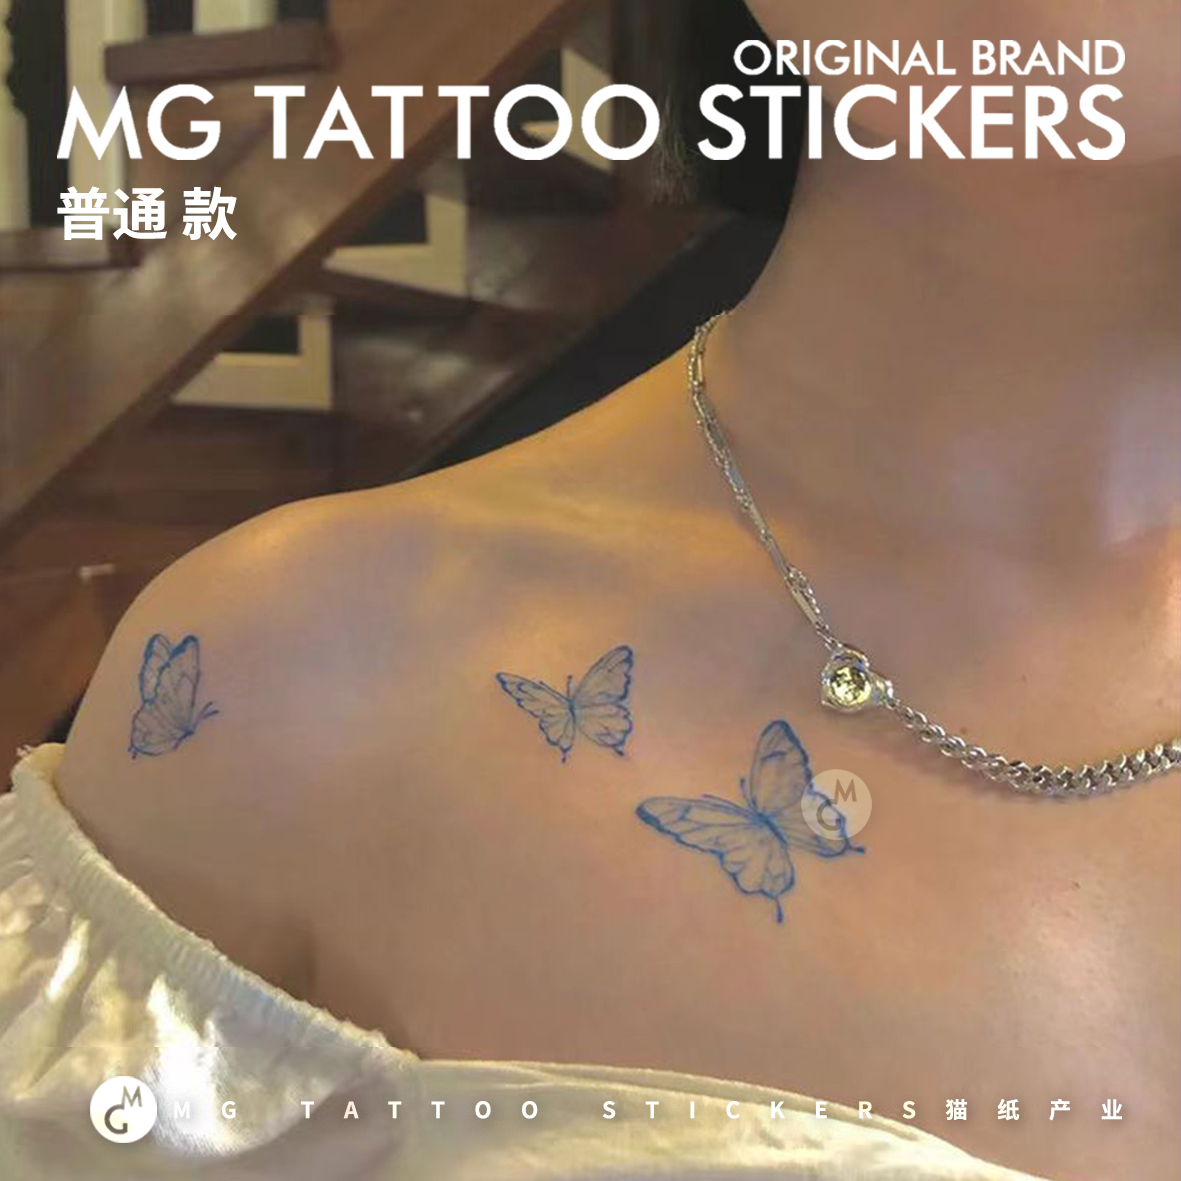 MG tattoo 蓝色唯美蝴蝶简约锁骨脚踝小清新性感防水少女纹身贴纸